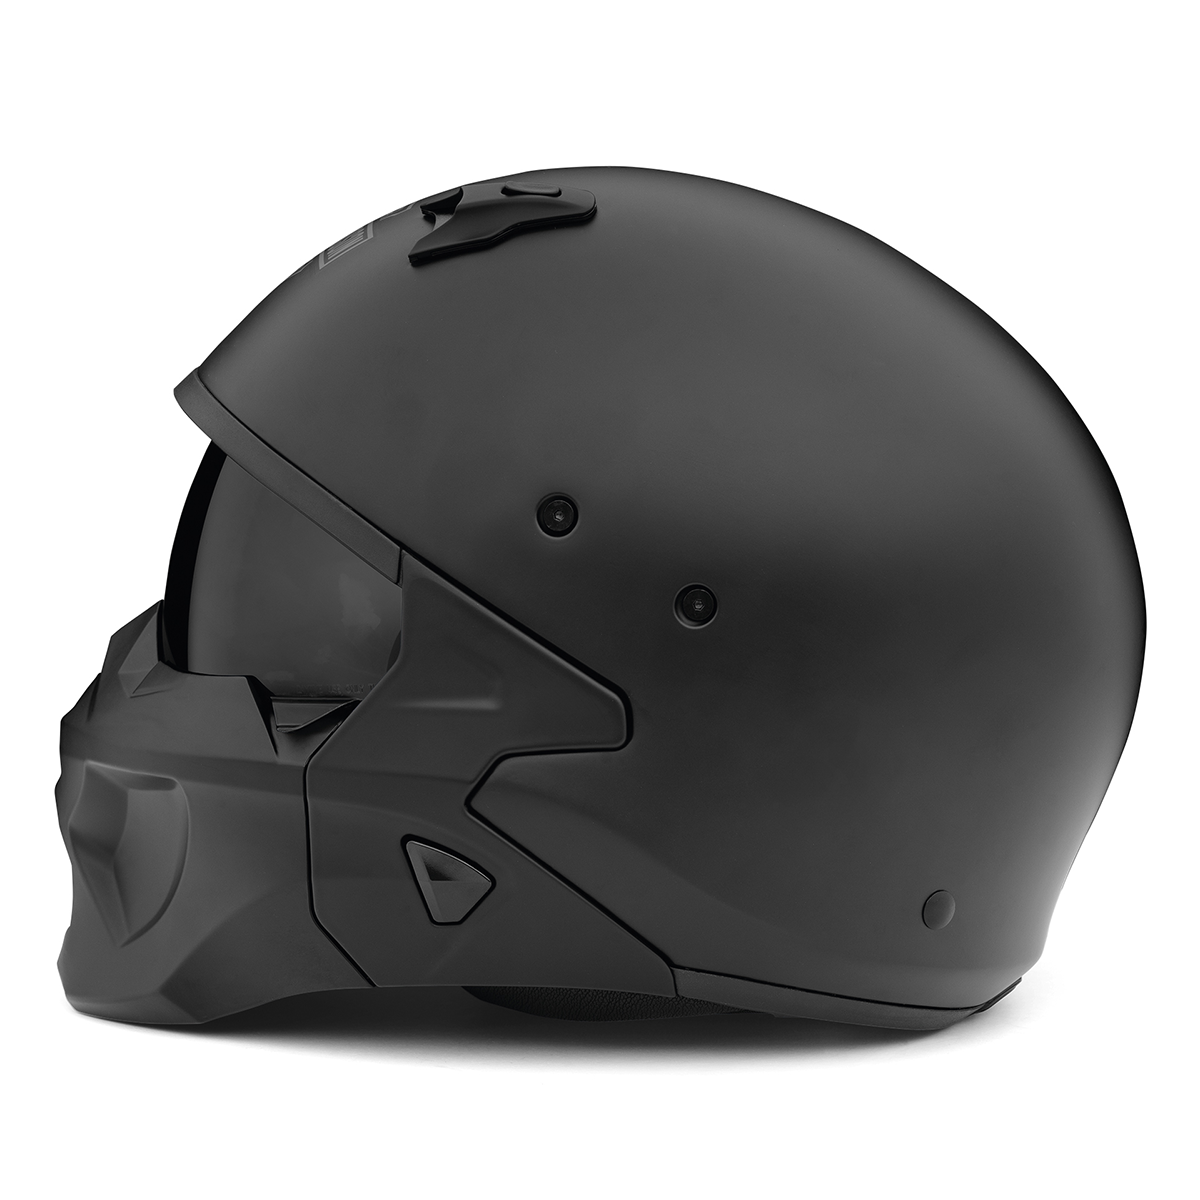 Harley-Davidson Gargoyle X07 2-in-1 Helmet